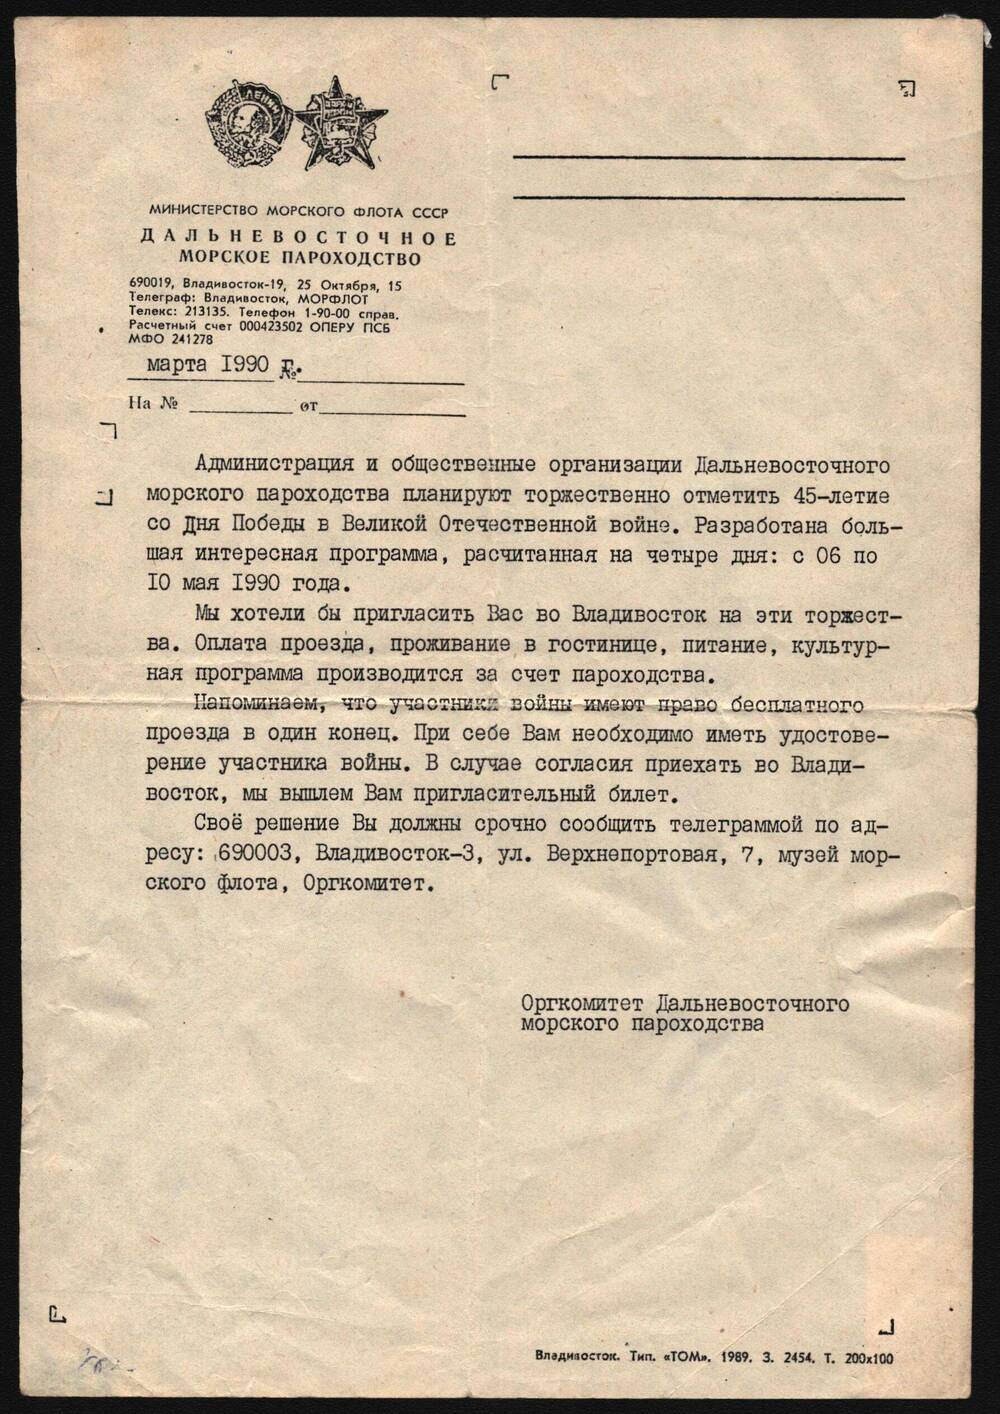 Приглашение на 45-летие со дня победы в Великой Отечественной войны Близнюк Владимира Ульяновича.